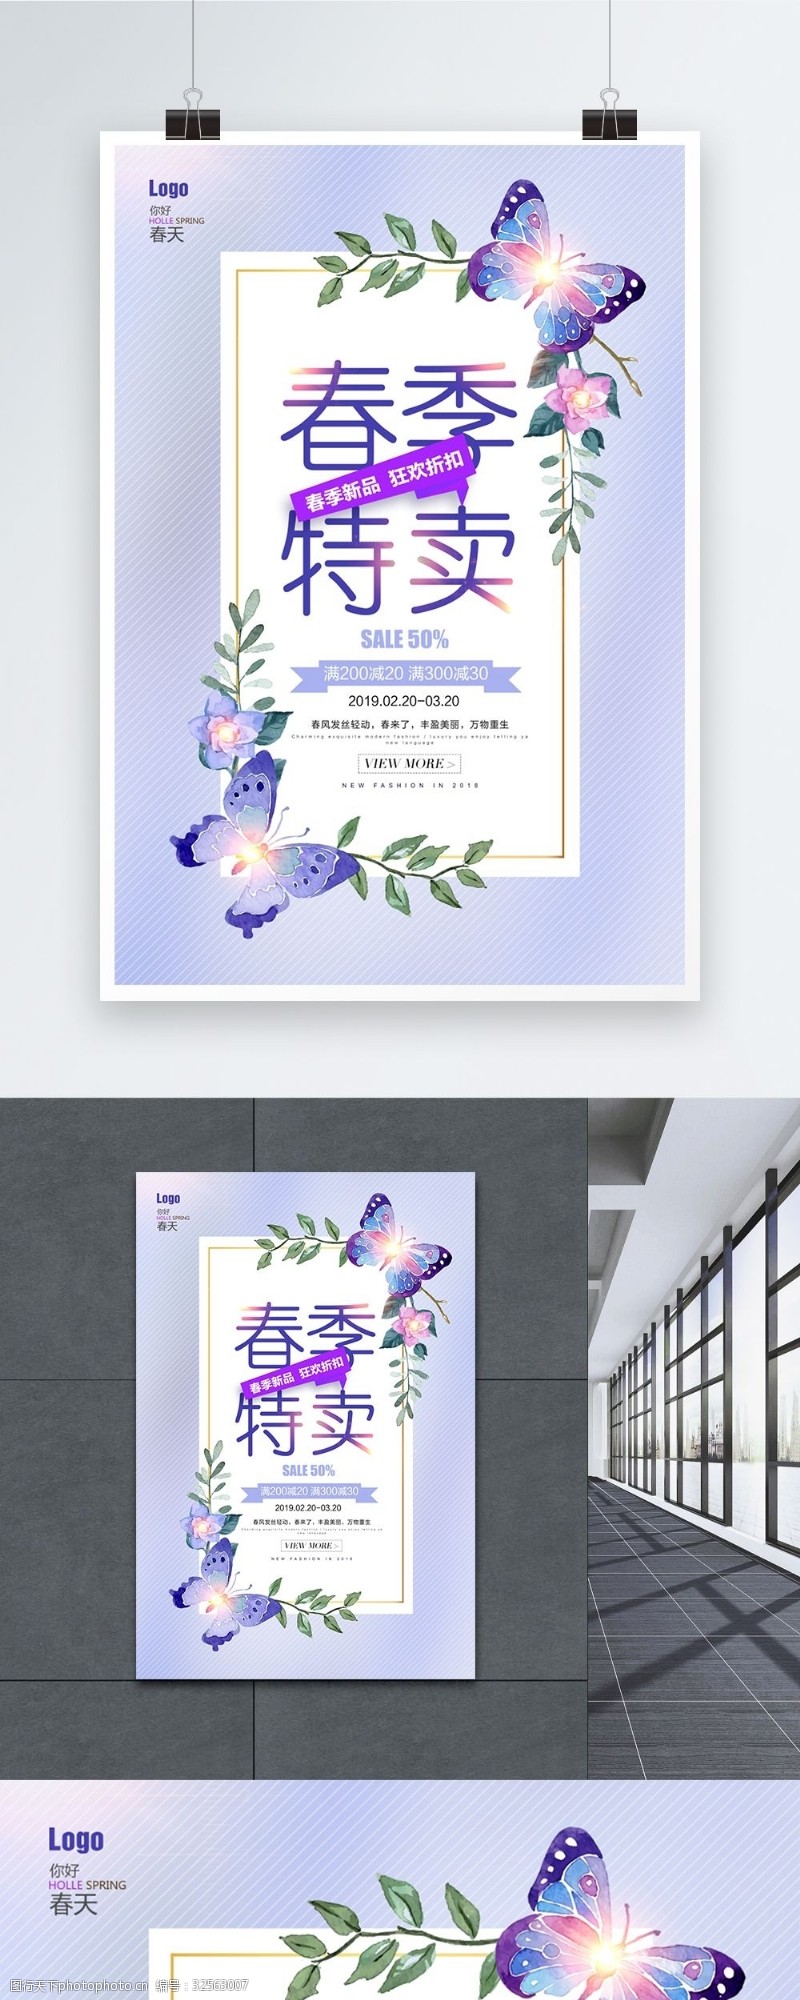 钜惠活动紫色小清新春季促销海报